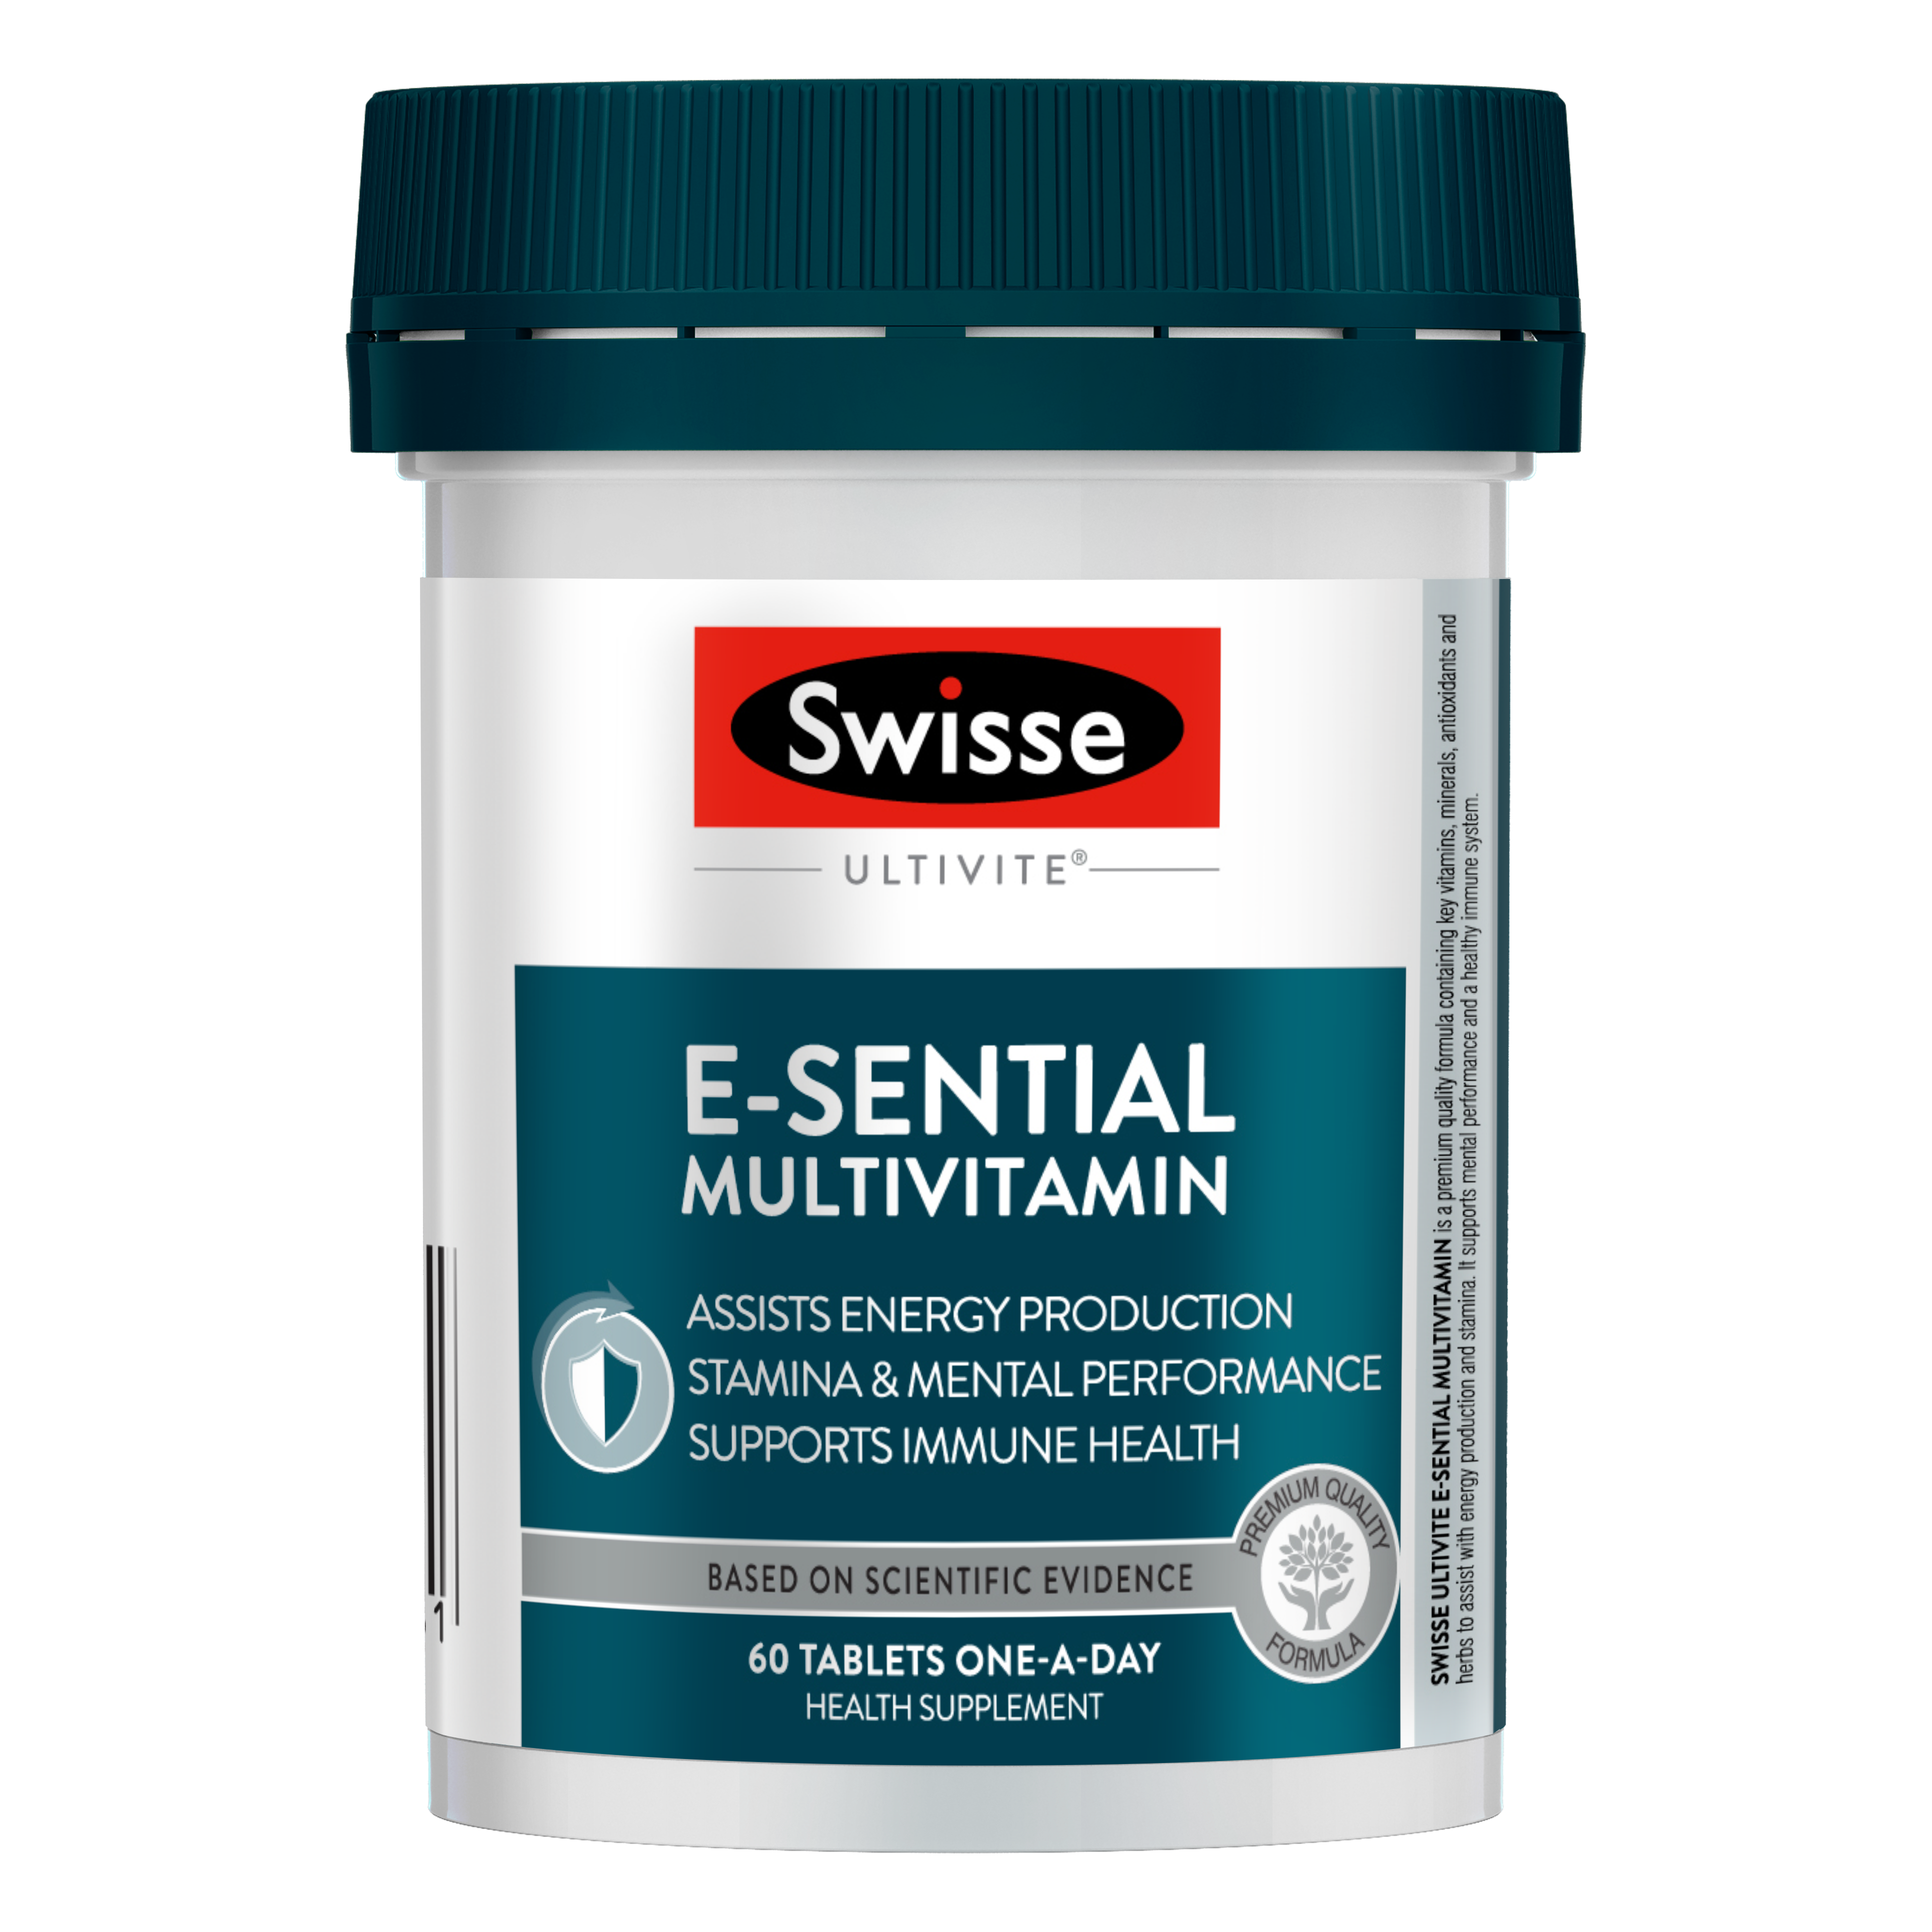 Swisse - Ultivite E-Sential Multivitamin